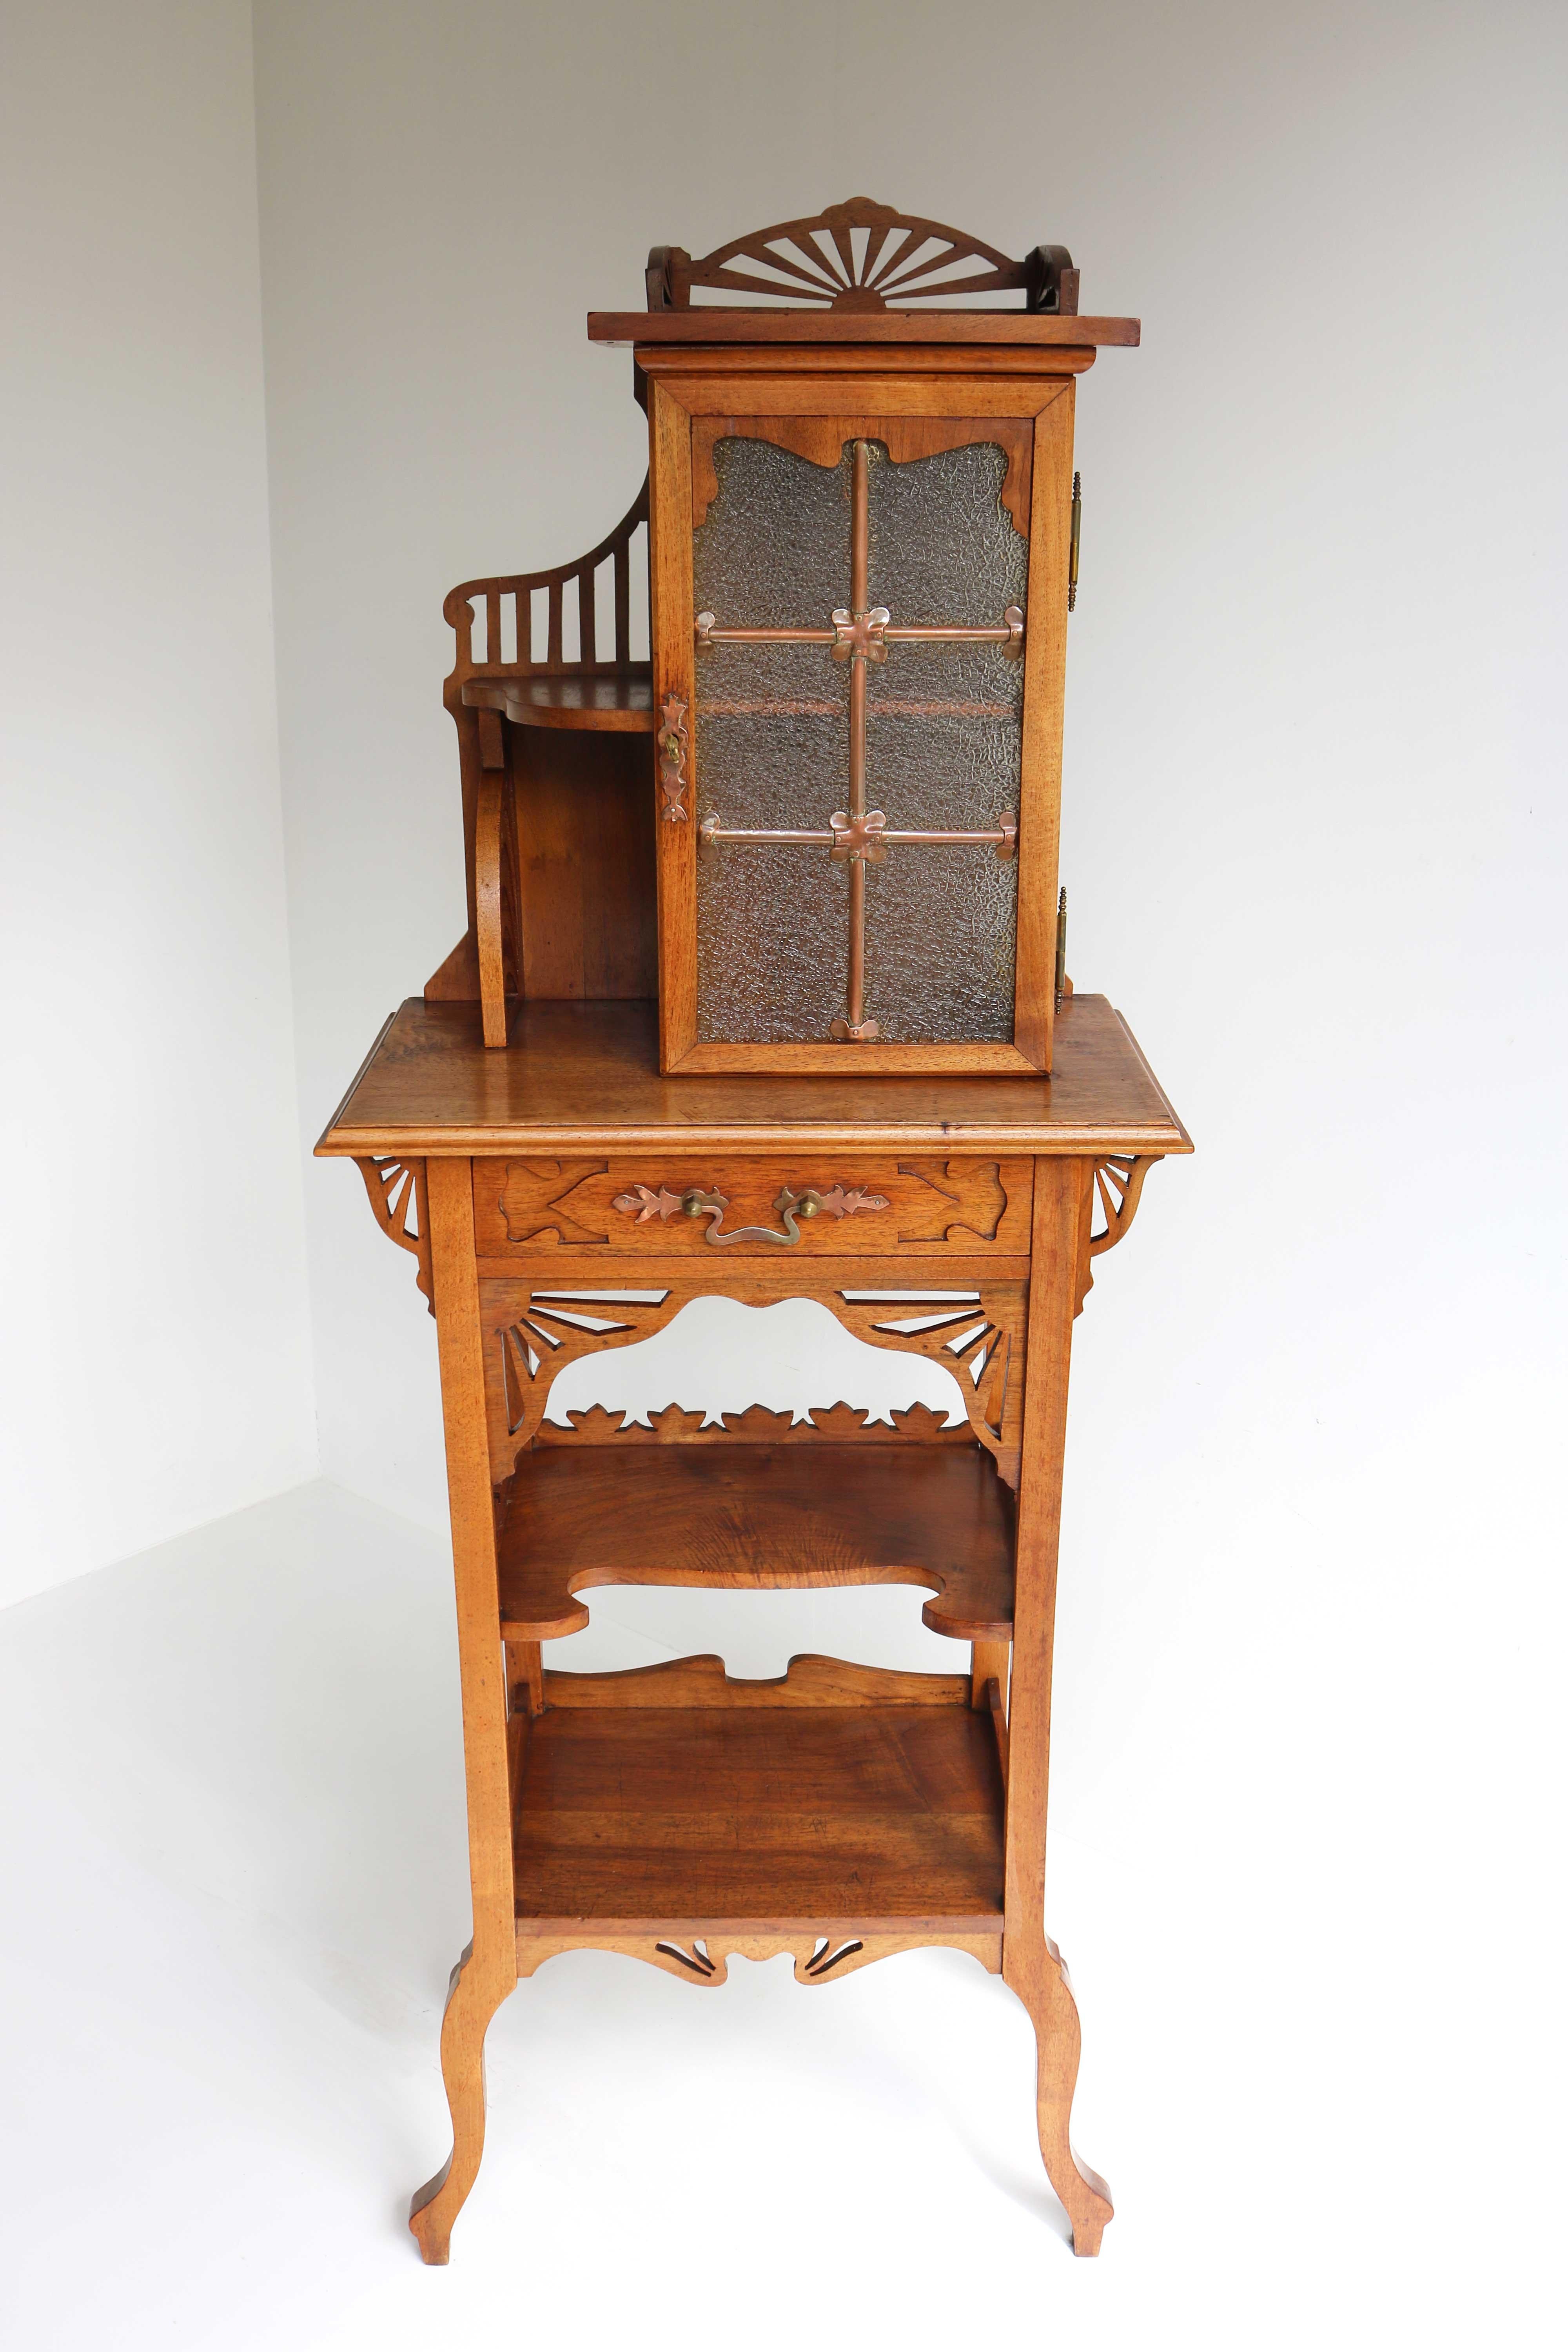 Ce magnifique meuble est un véritable accroche-regard dans une maison Arts & Crafts ou Art Nouveau ! 
Rare petit cabinet c.1900- 1910. Rare en raison de sa taille et de sa qualité !
Des meubles polyvalents qui peuvent être utilisés dans